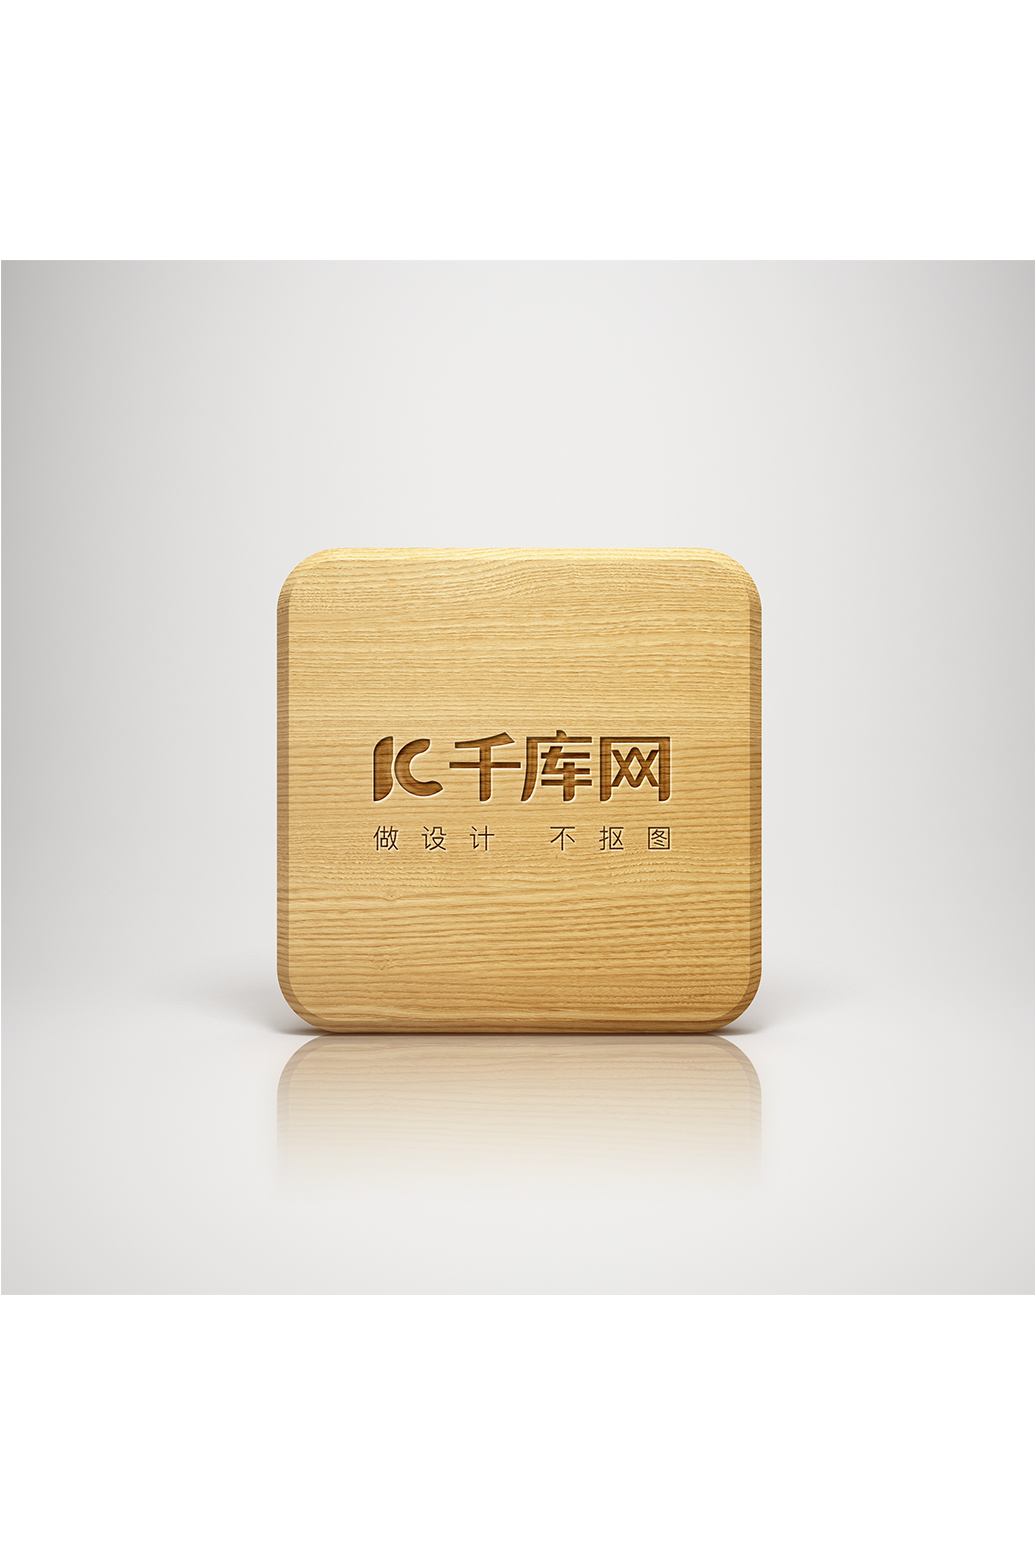 木头上logo标志素材样机模板图片